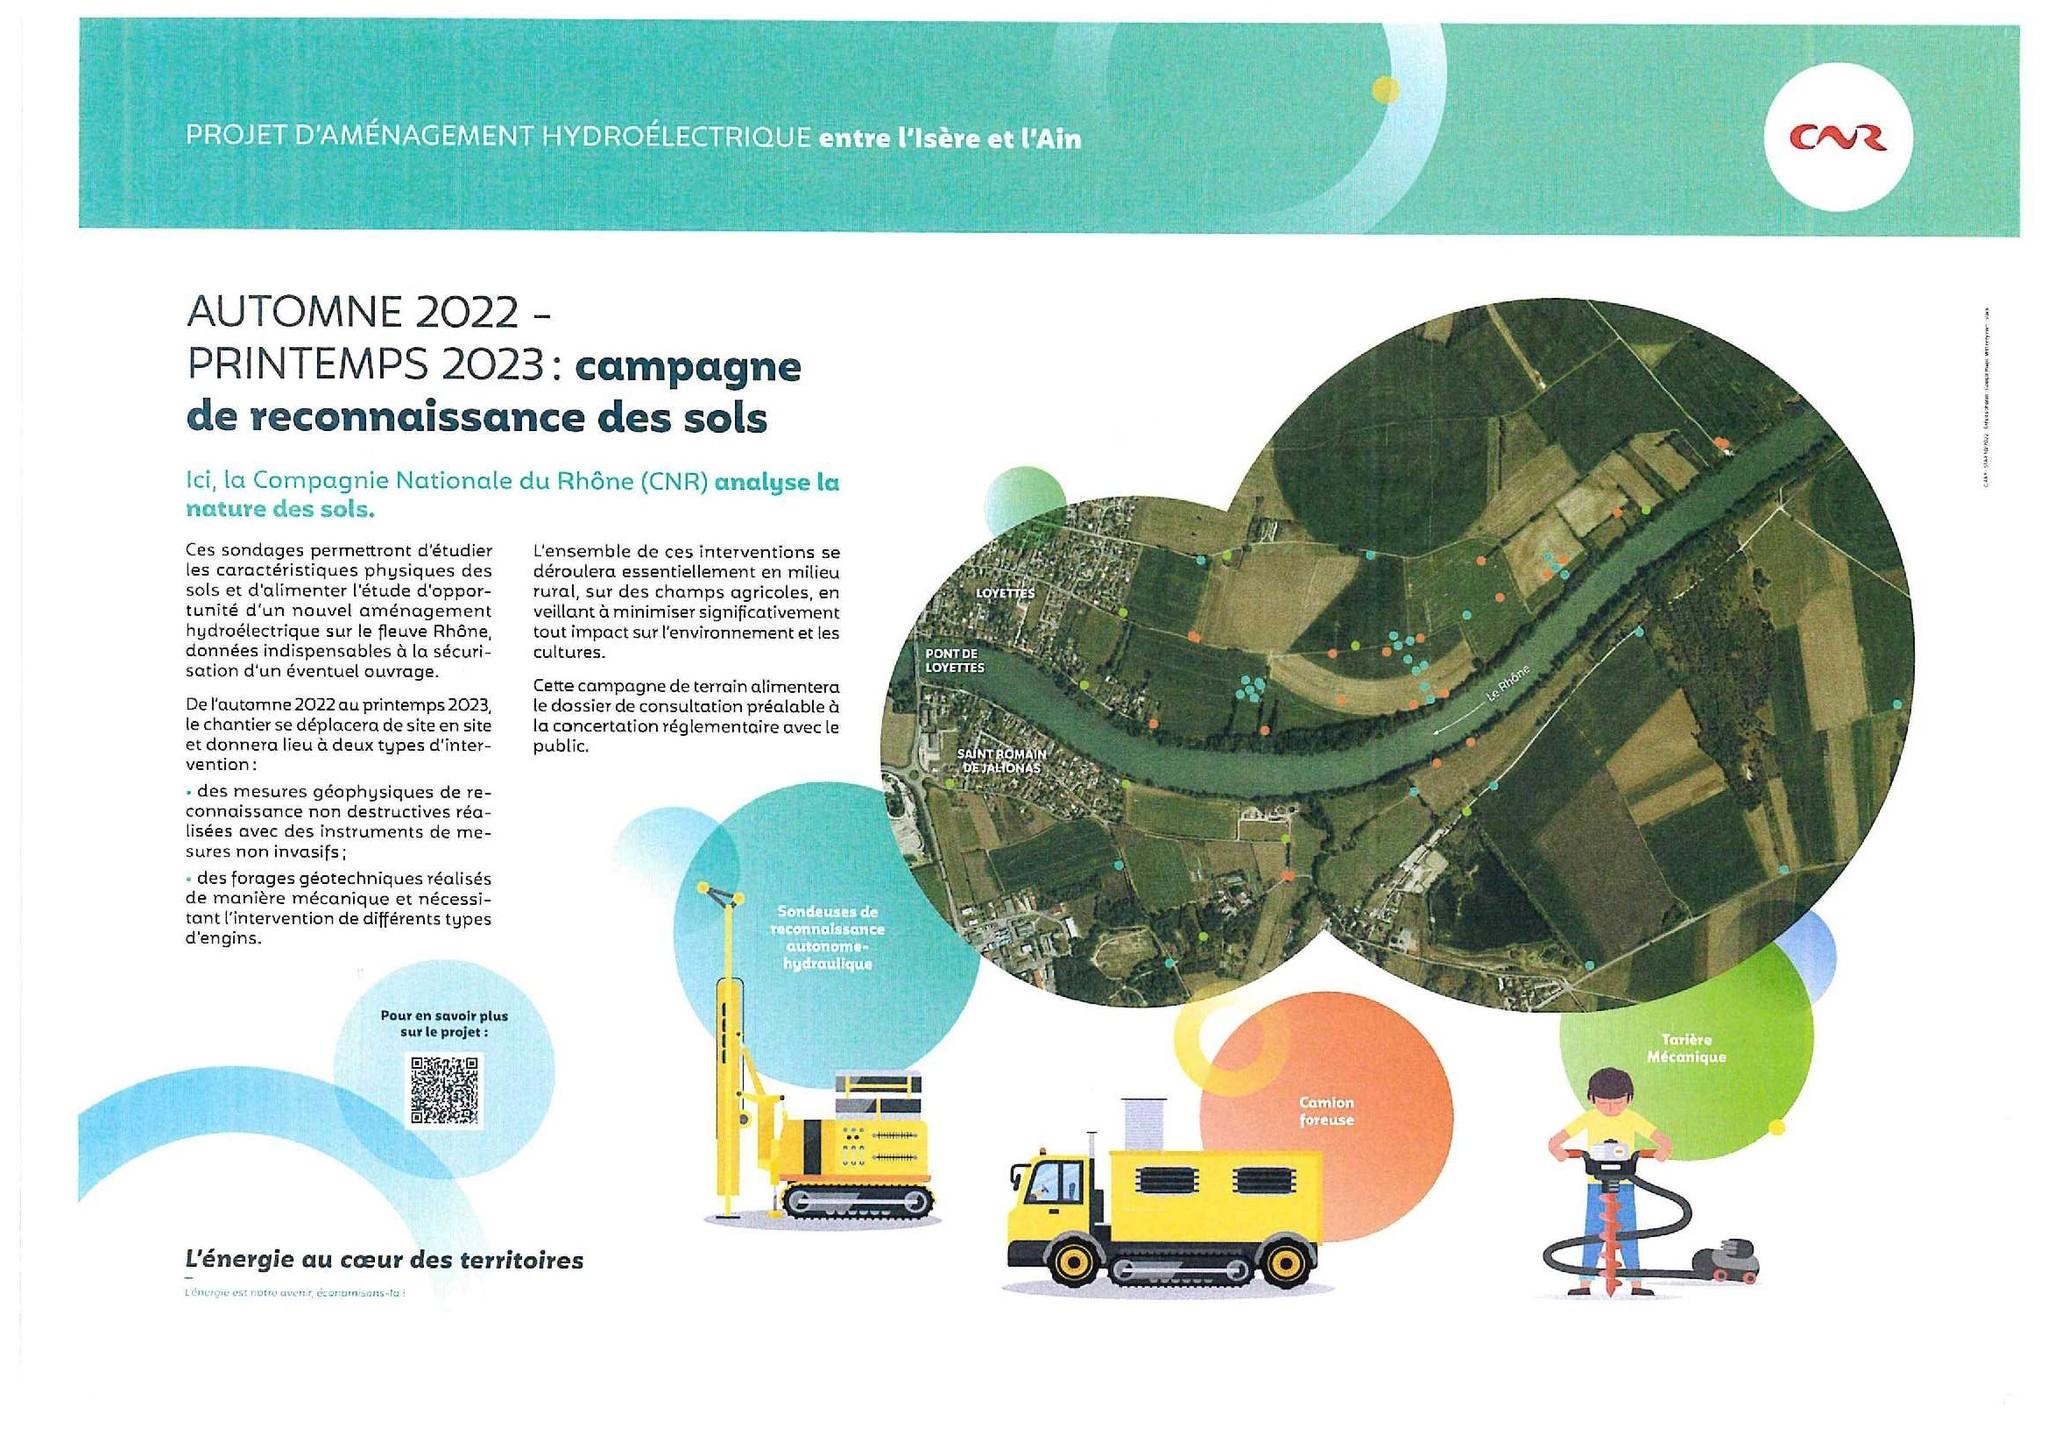 Image de couverture - CNR: Campagne de reconnaissance des sols du projet d'aménagement hydroélectrique entre l'Ain et l'Isère